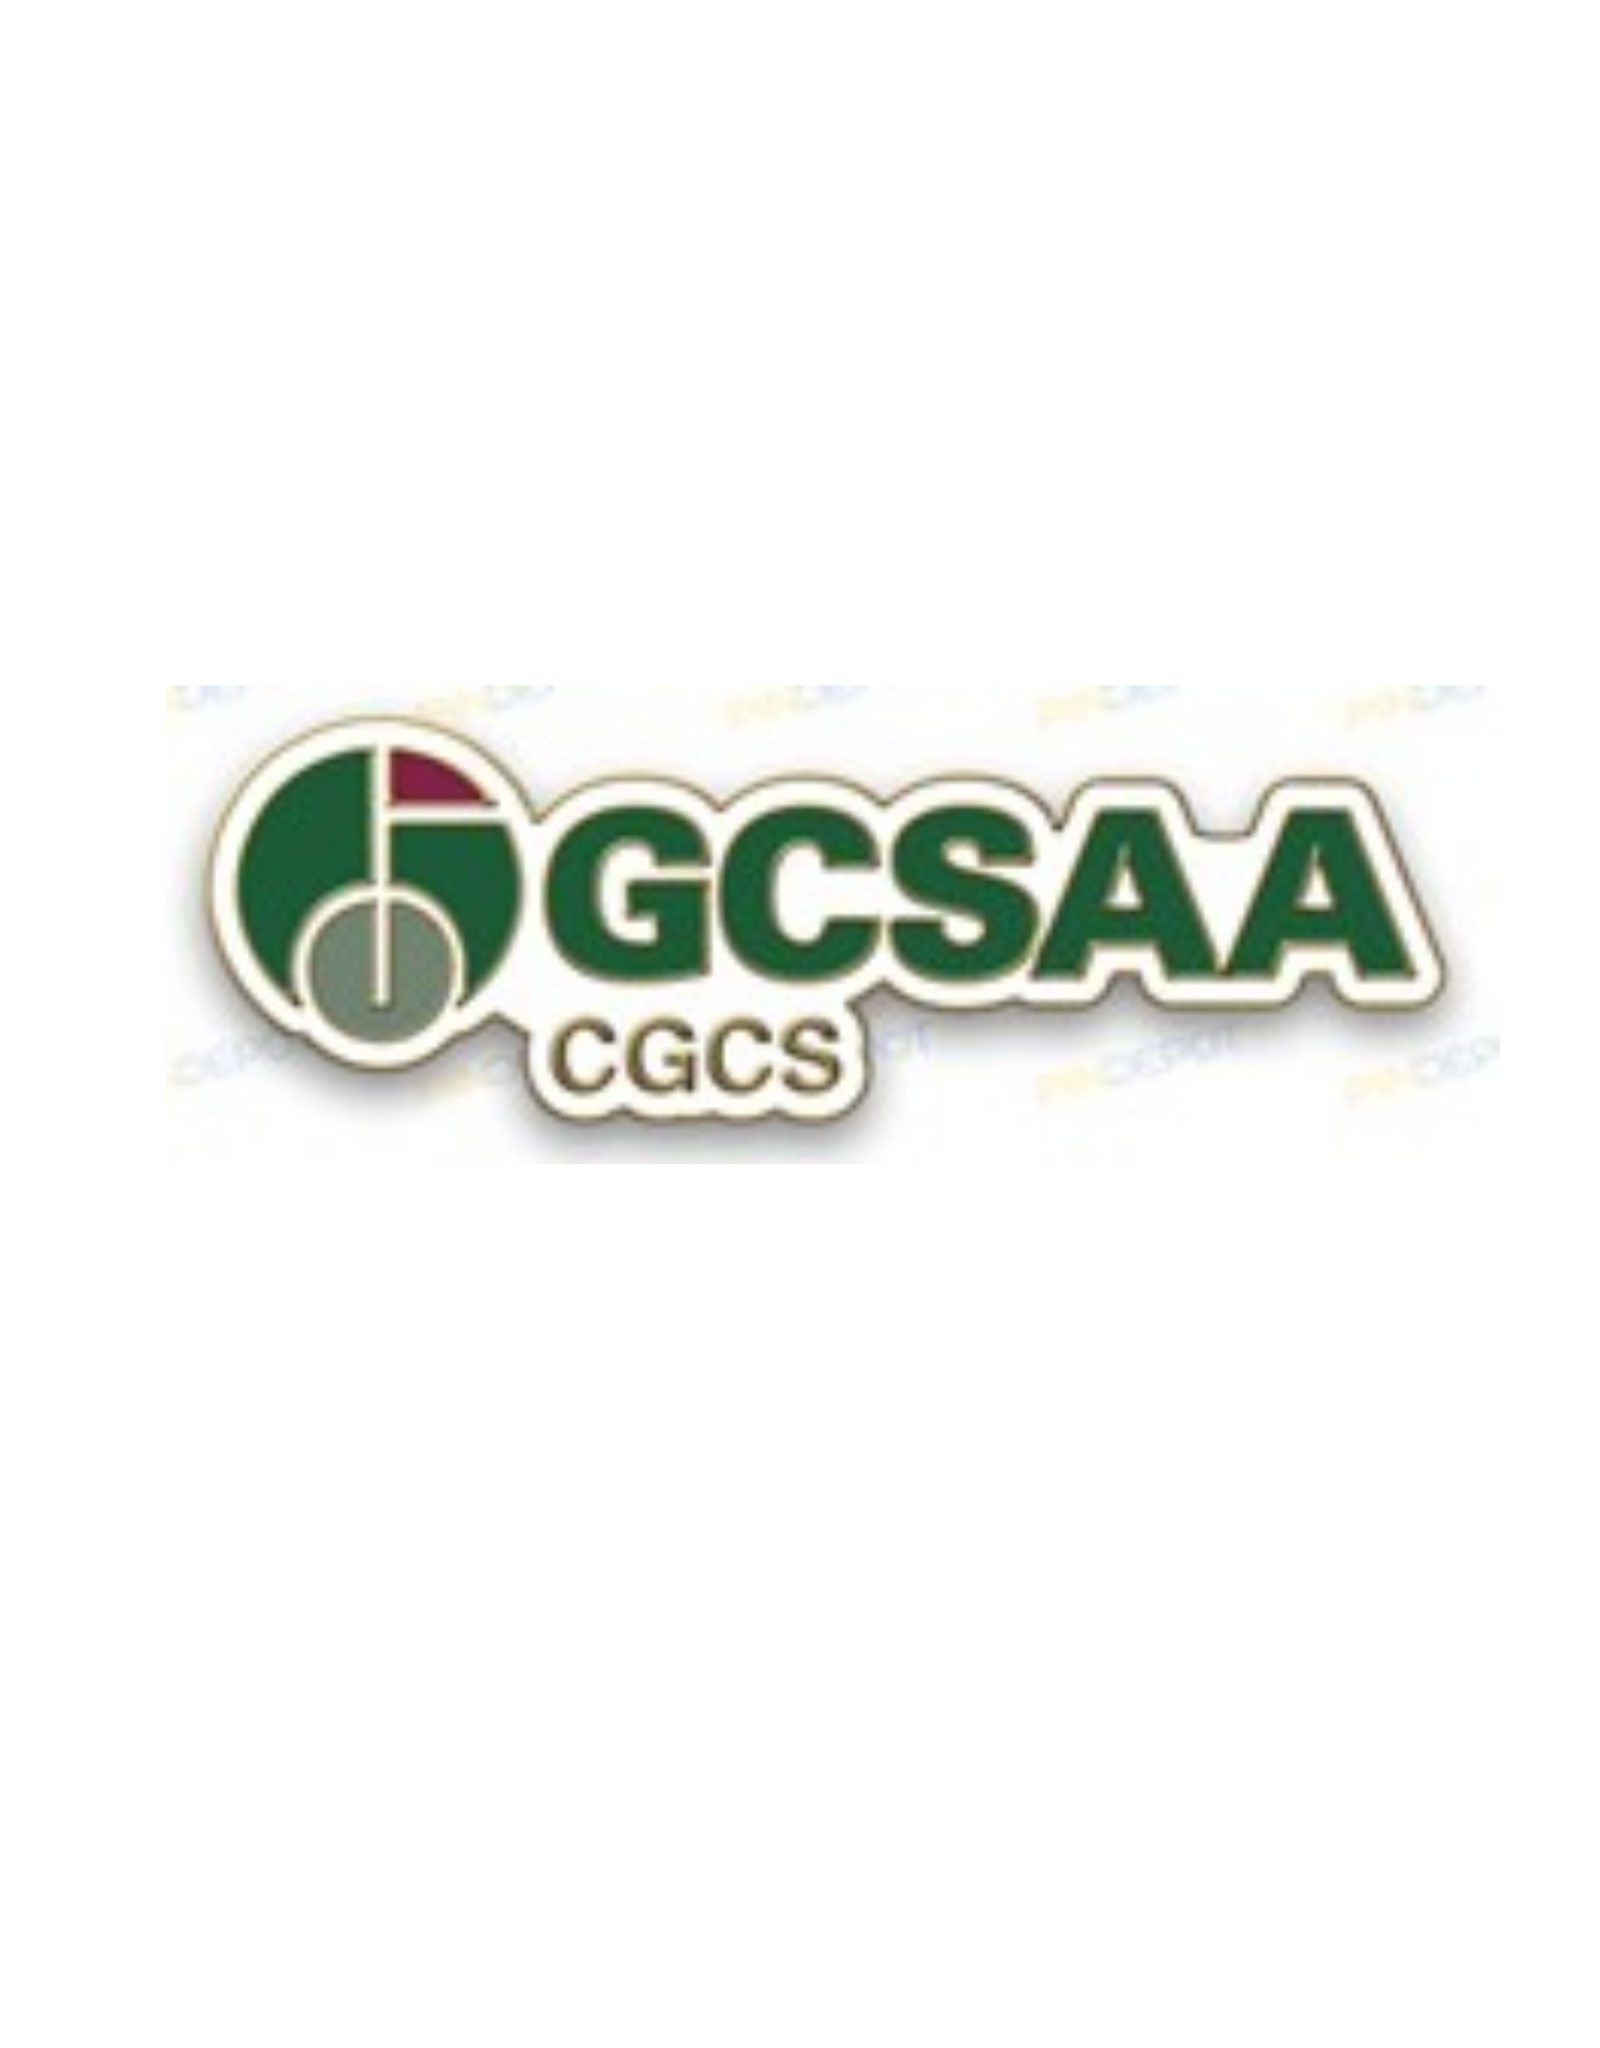 GCSAA CGCS Lapel Pin